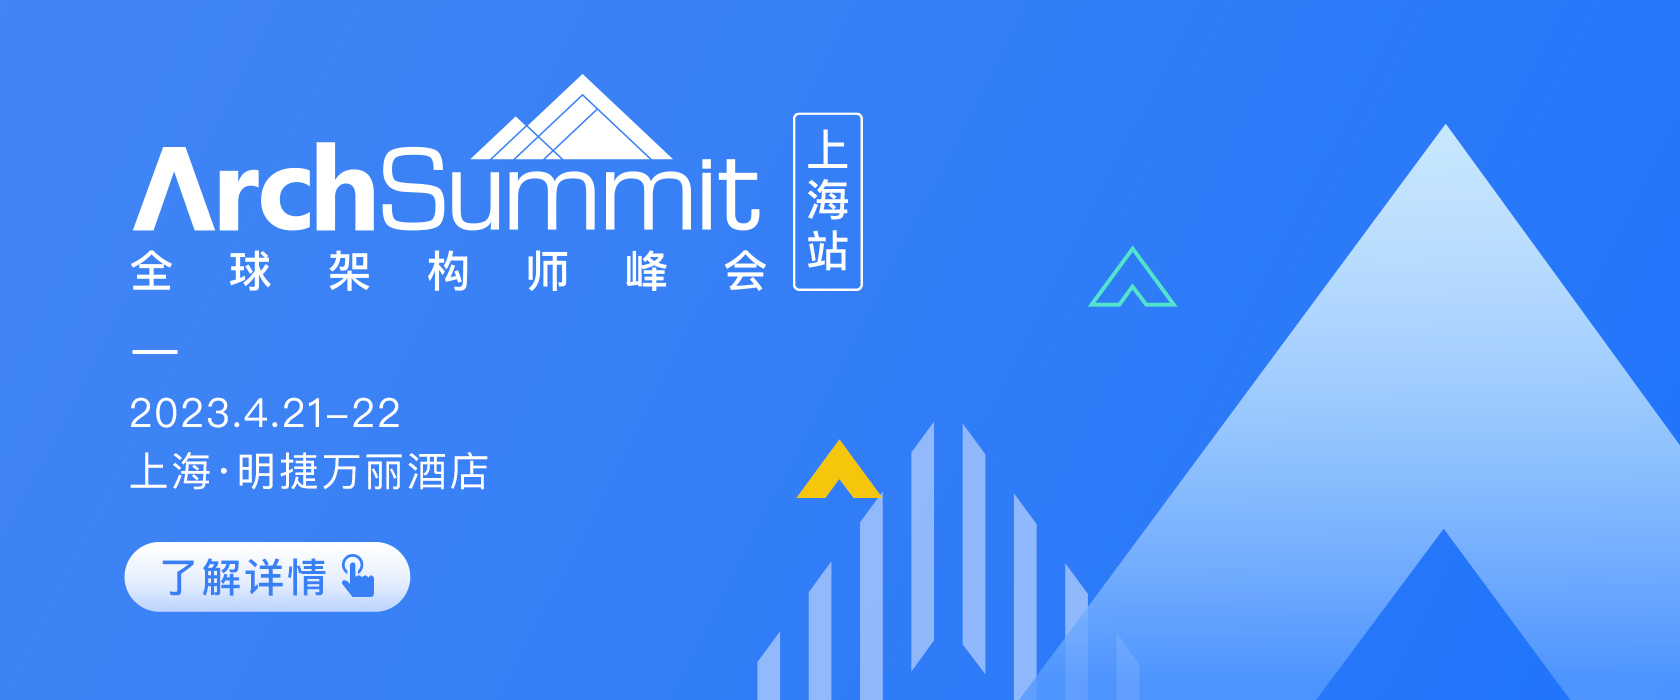 2023全球架構師峰會ArchSummit 上海